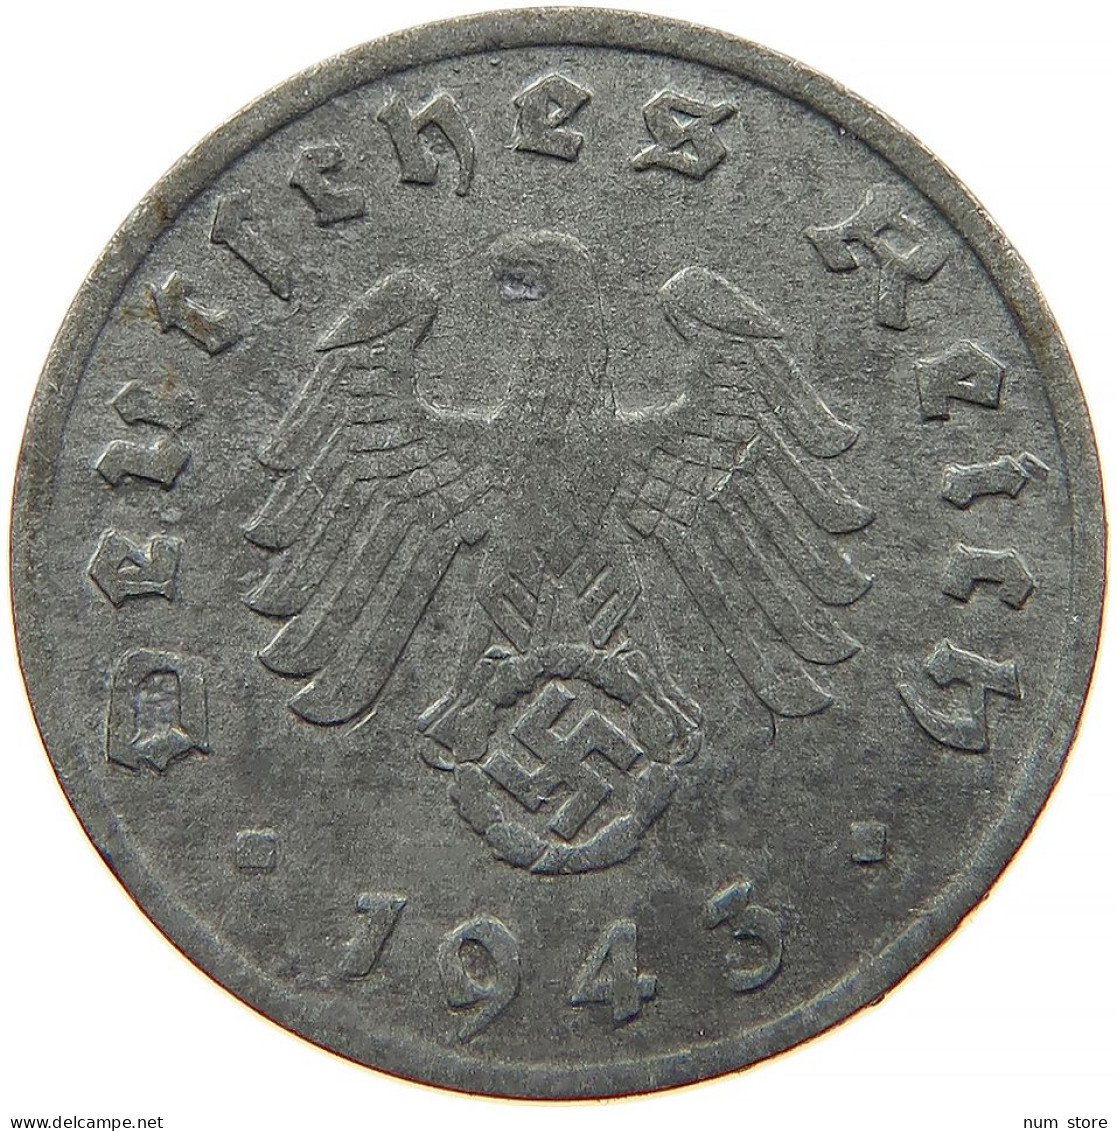 GERMANY 1 REICHSPFENNIG 1943 A #s091 1051 - 1 Reichspfennig